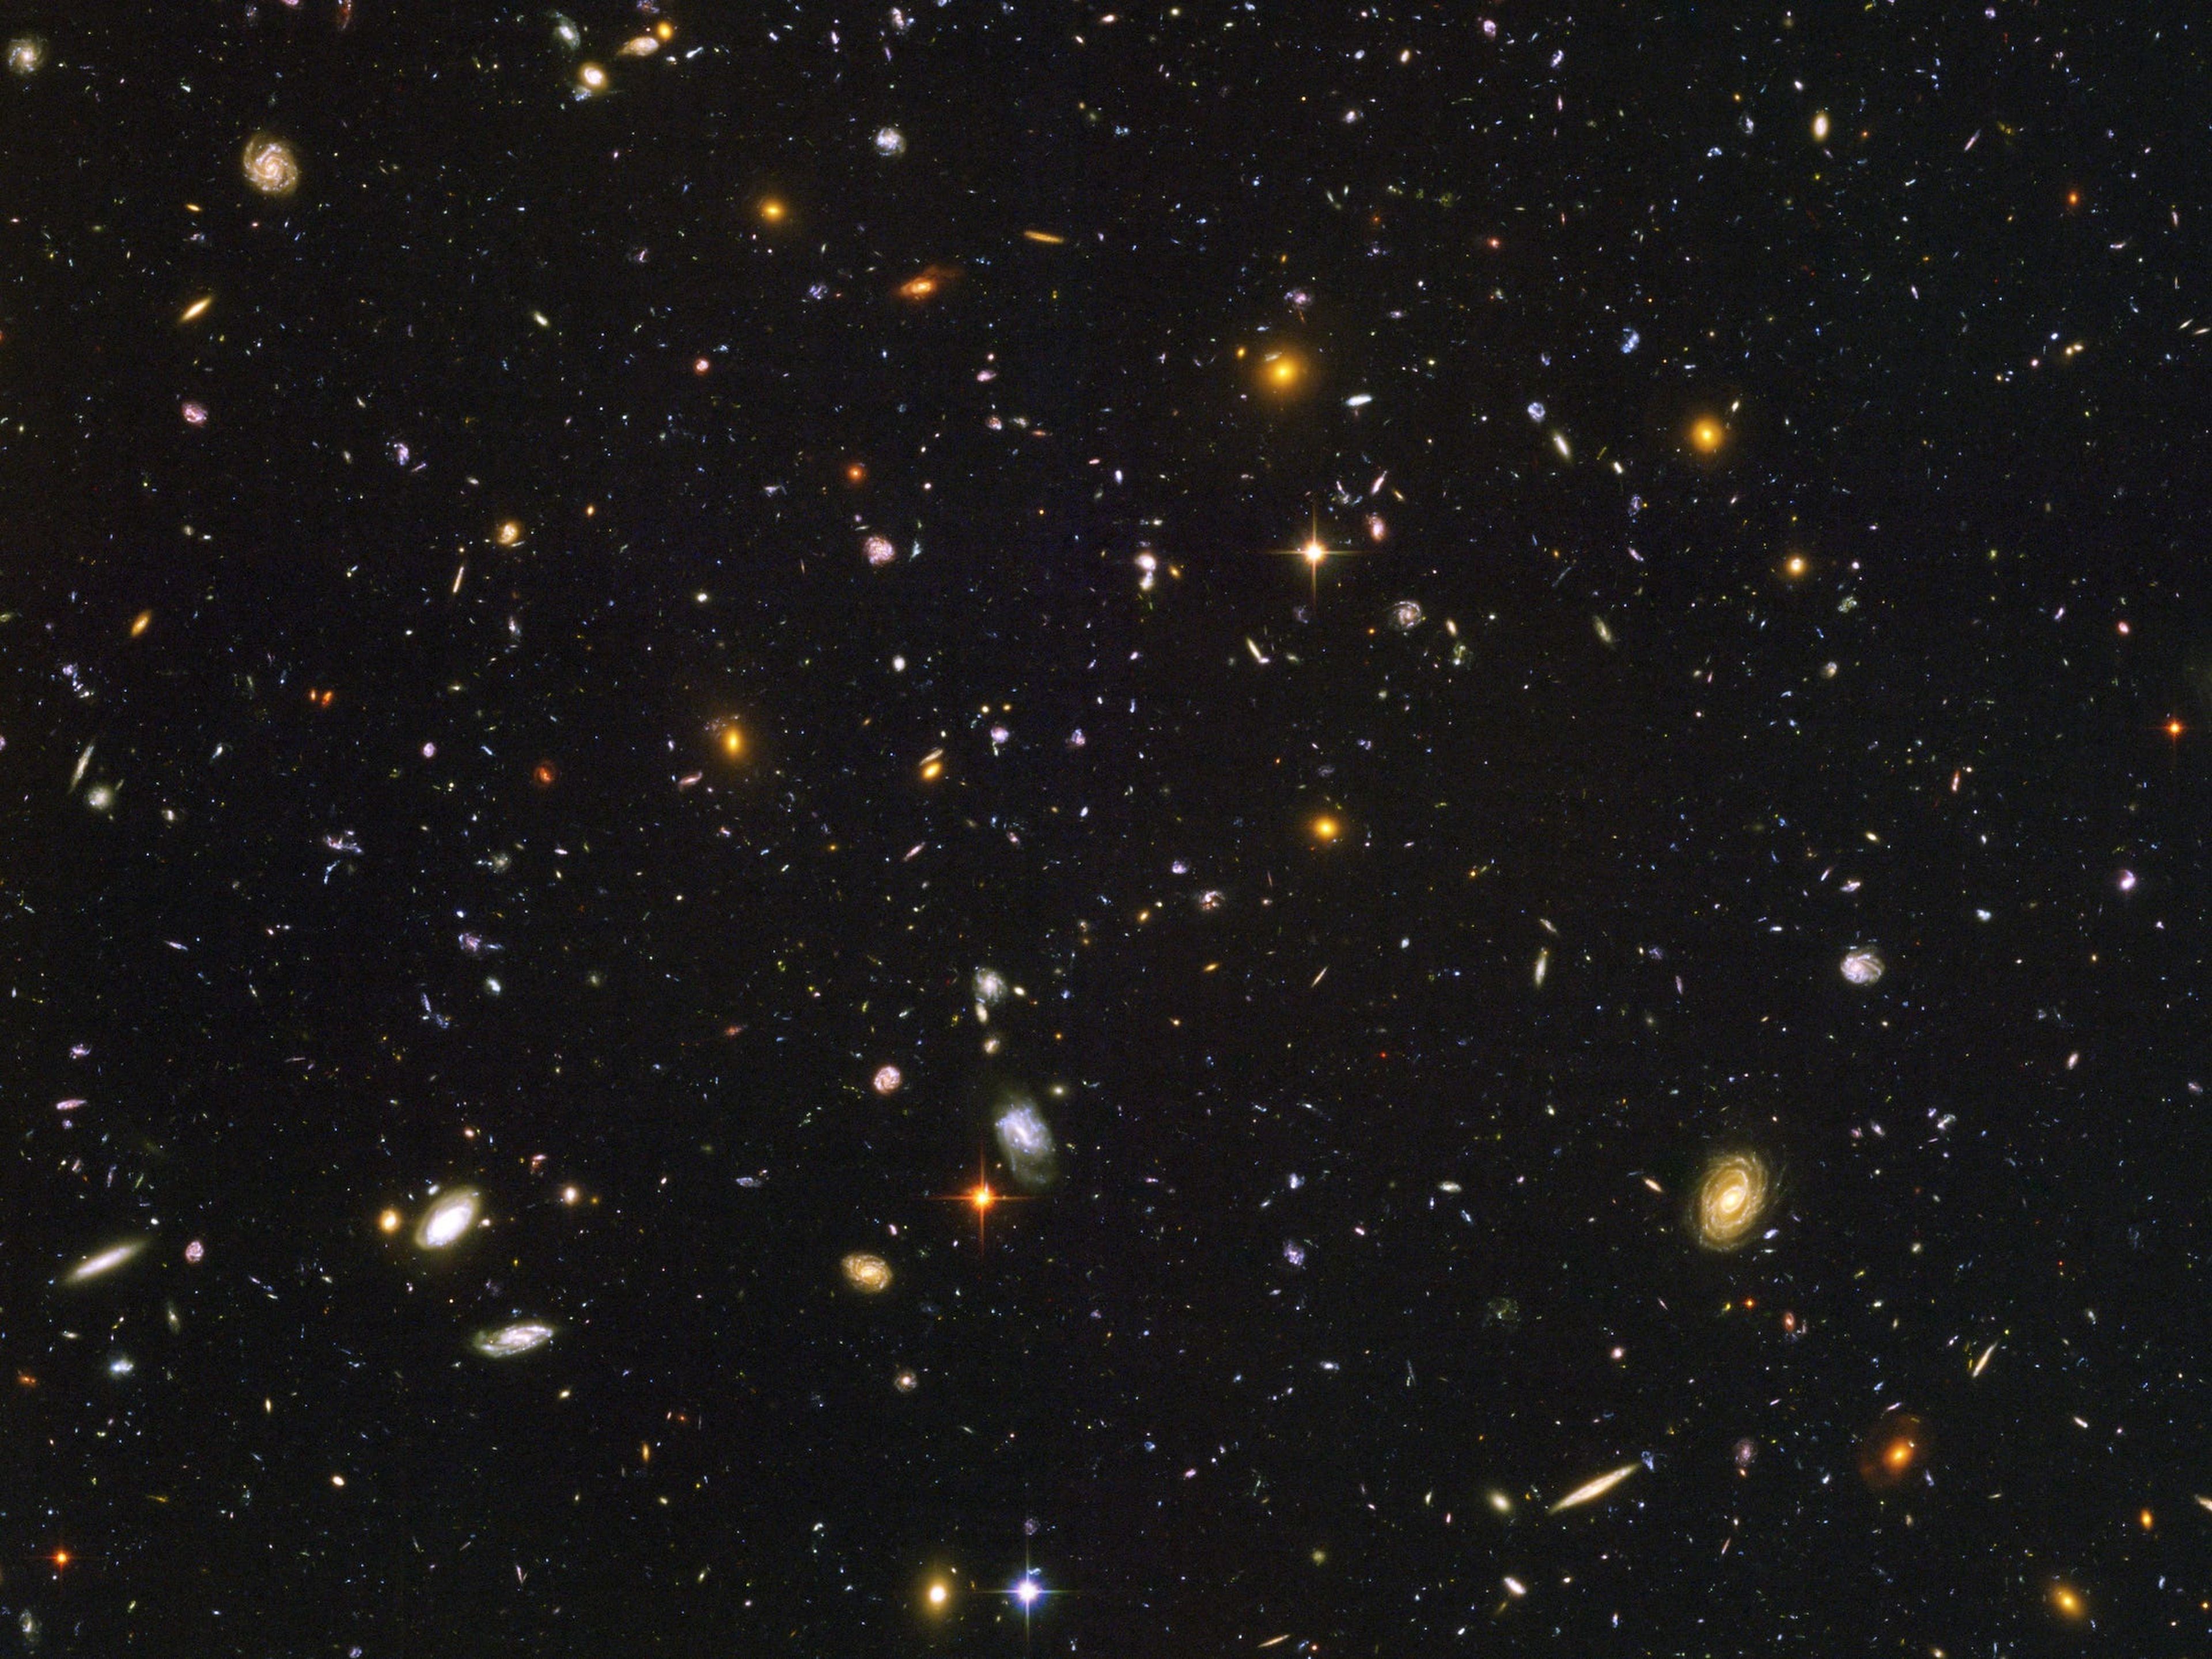 Esta imagen, denominada Campo Ultra Profundo del Hubble, es la más profunda del cosmos en luz visible. Incluye casi 10.000 galaxias